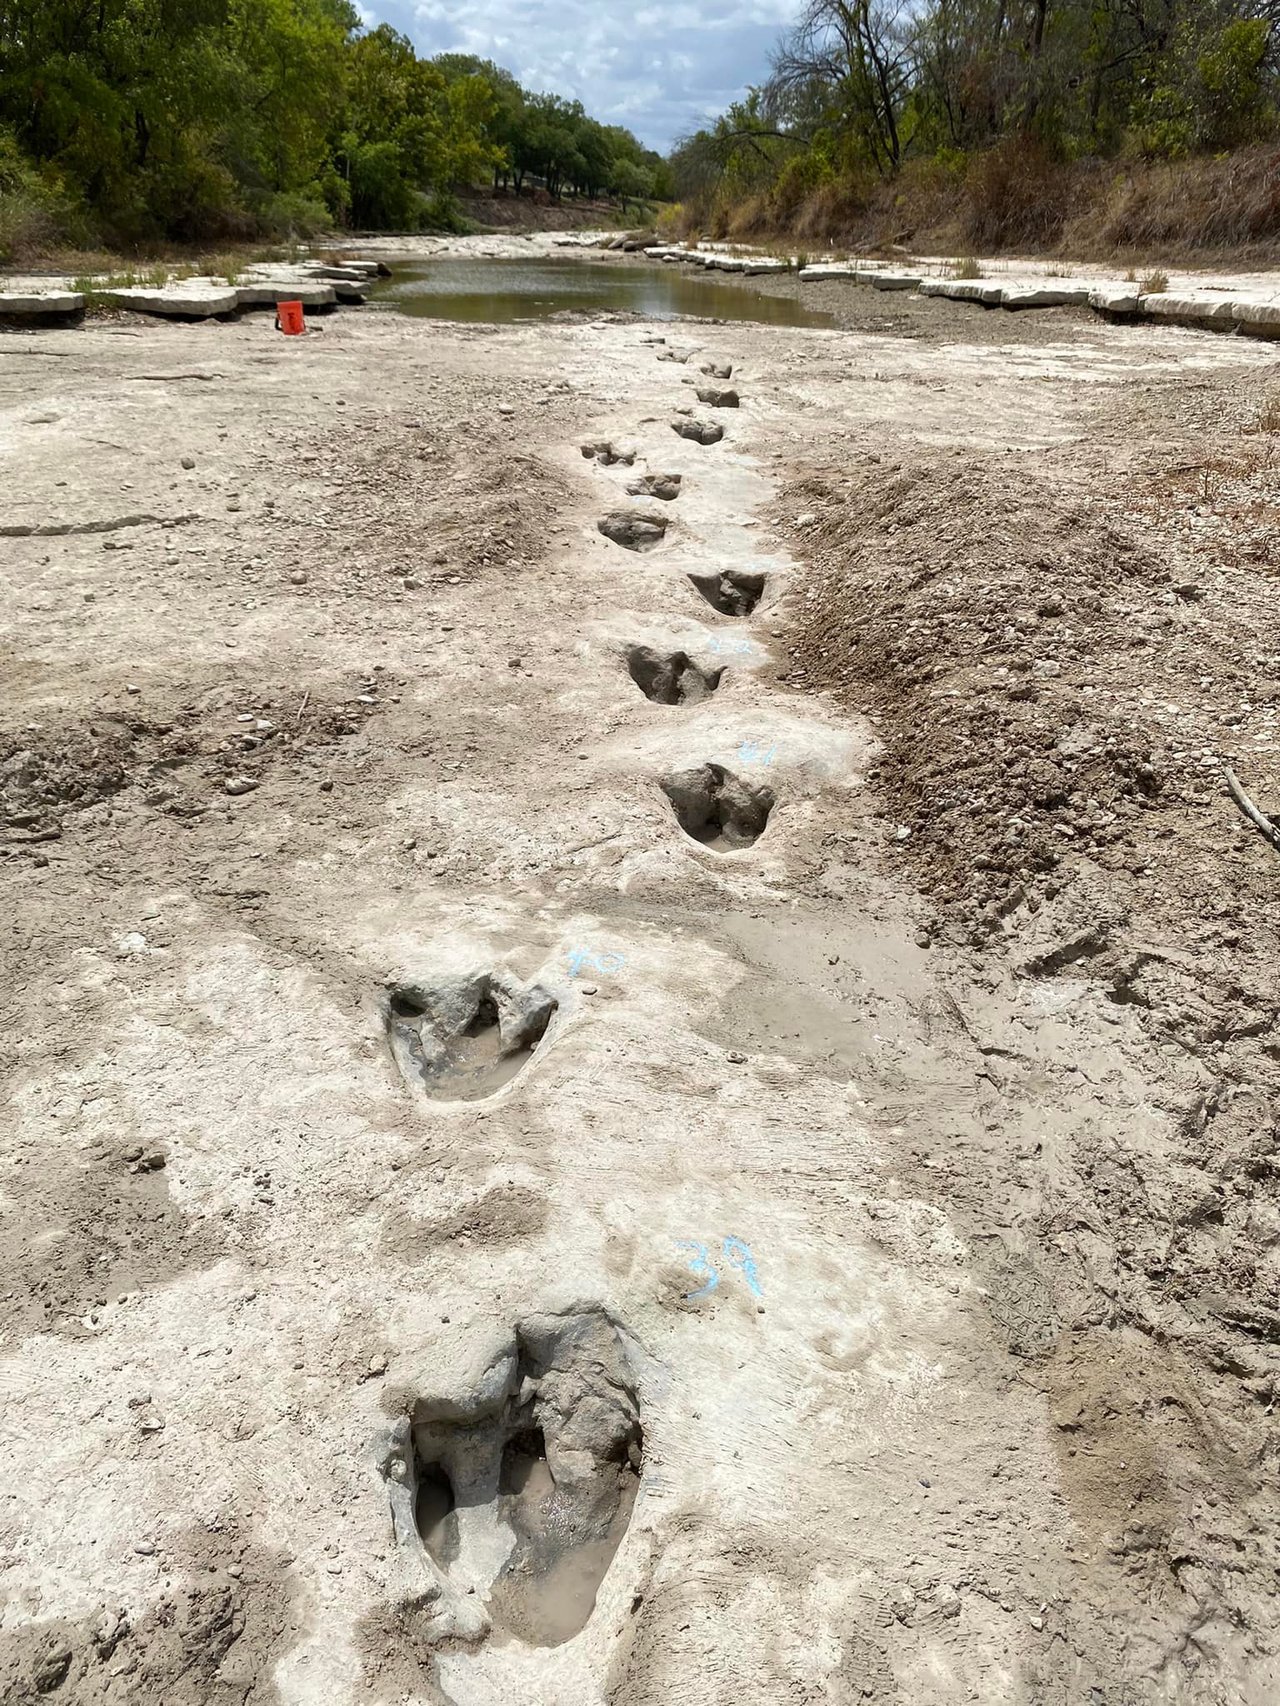 德州恐龍谷公園河床乾涸1.13億年前恐龍化石浮現| 美國綜合| 美國 